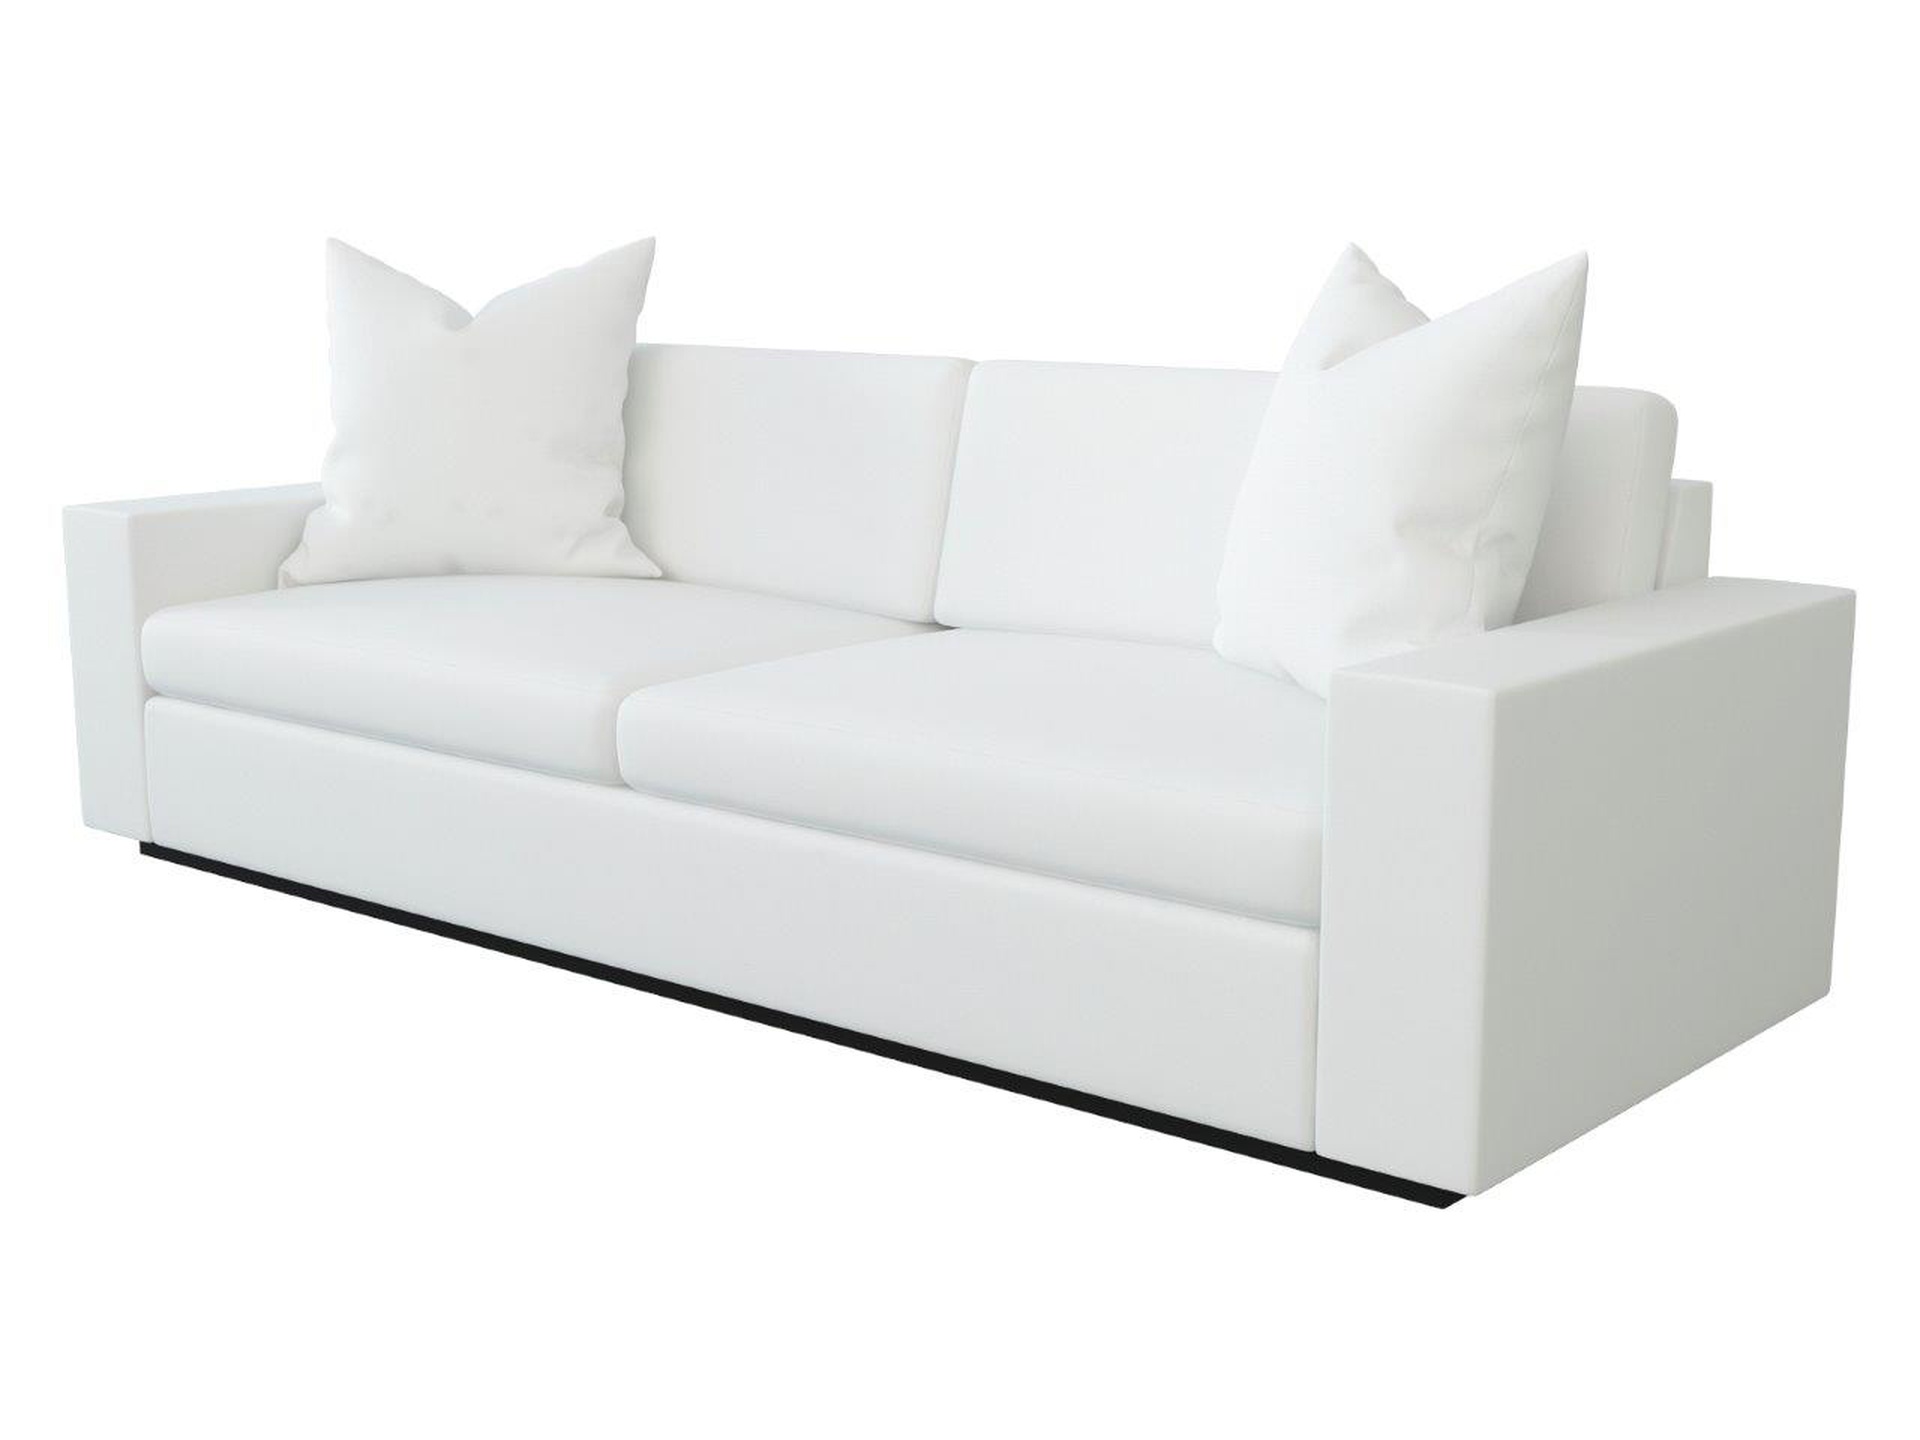 776-106 sofa